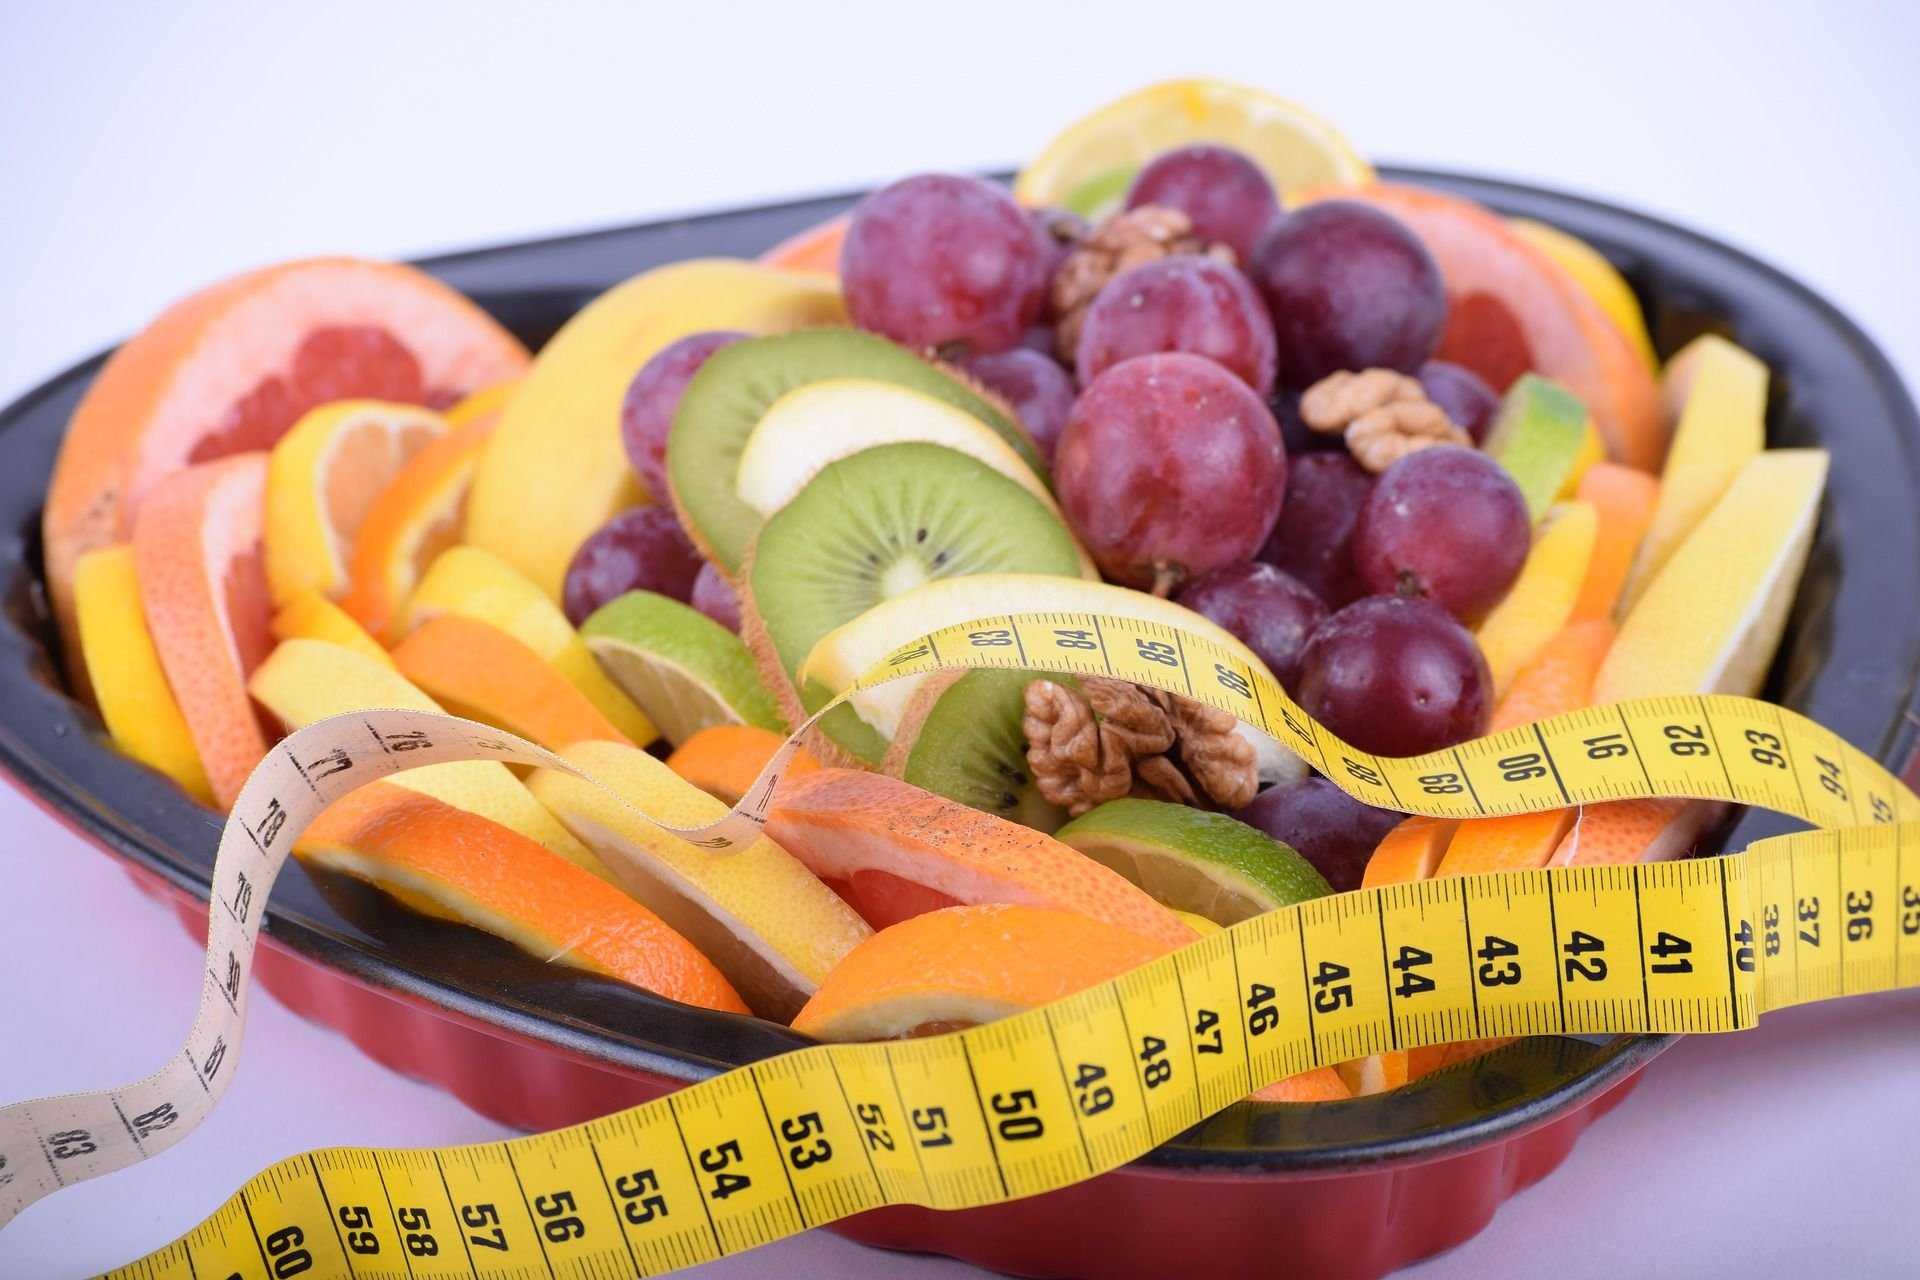 Можно ли есть при похудении фрукты, рекомендуемые и запрещенные | irksportmol.ru